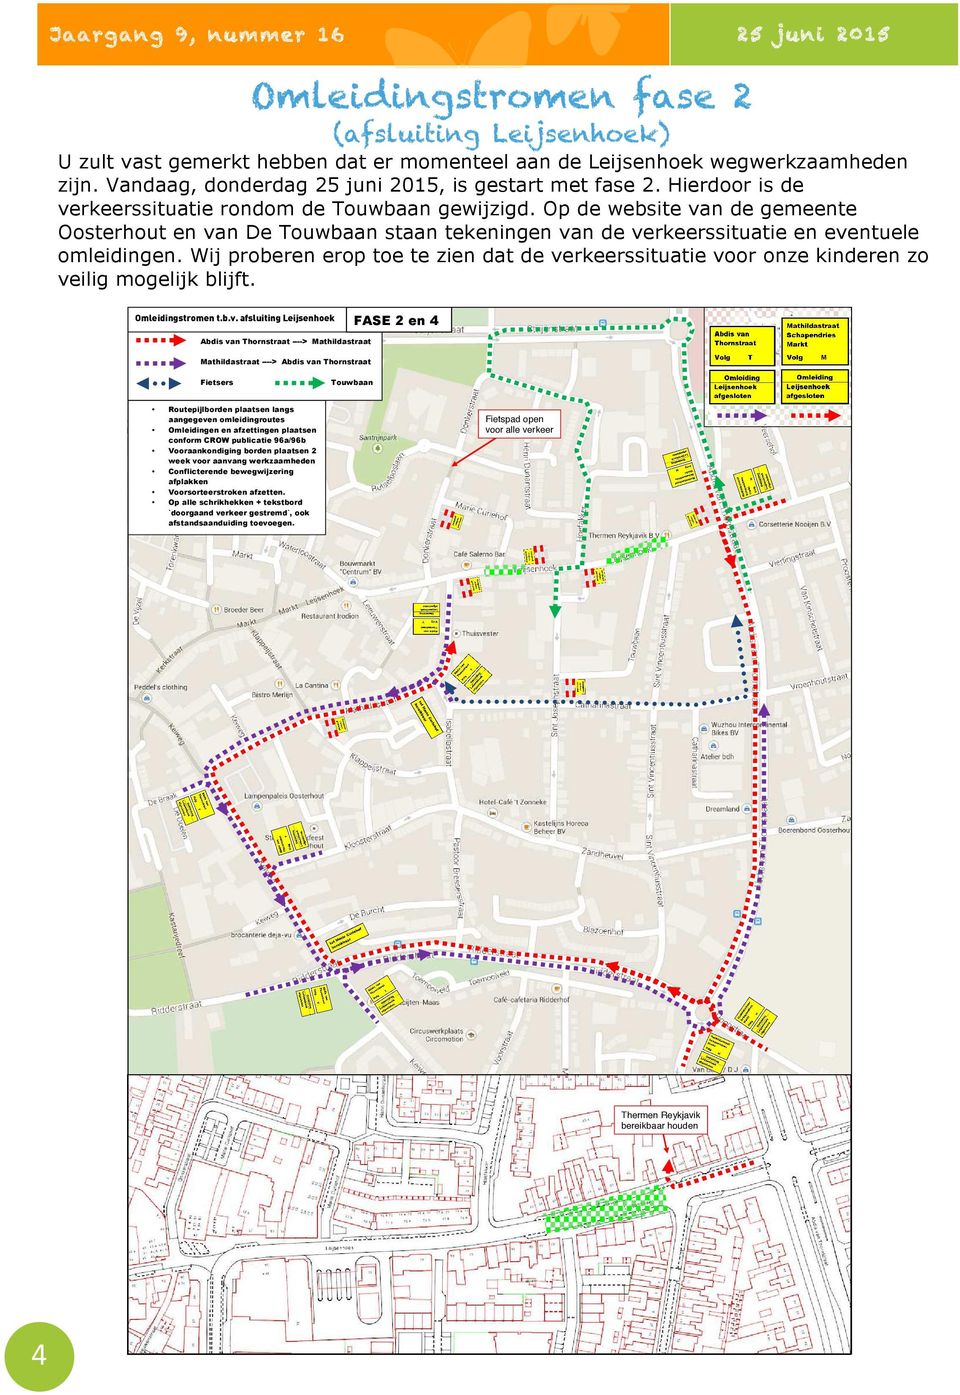 Op de website van de gemeente Oosterhout en van De Touwbaan staan tekeningen van de verkeerssituatie en eventuele omleidingen.